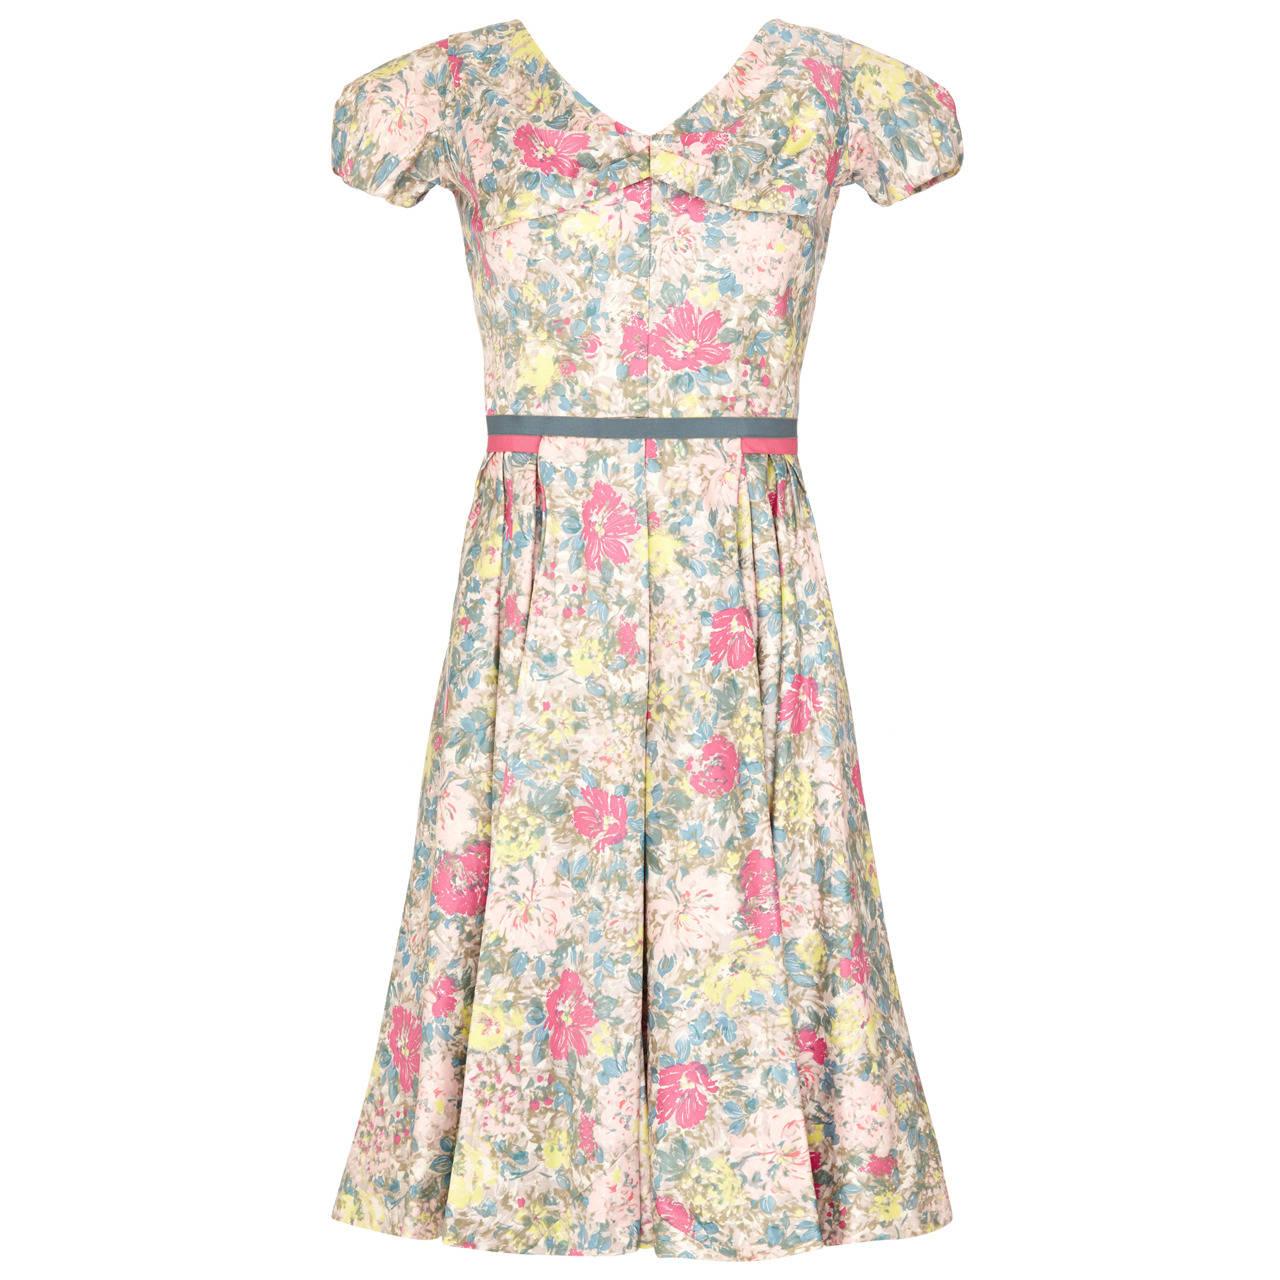 1950s Jane Derby by Oscar de la Renta Cotton Floral Dress For Sale